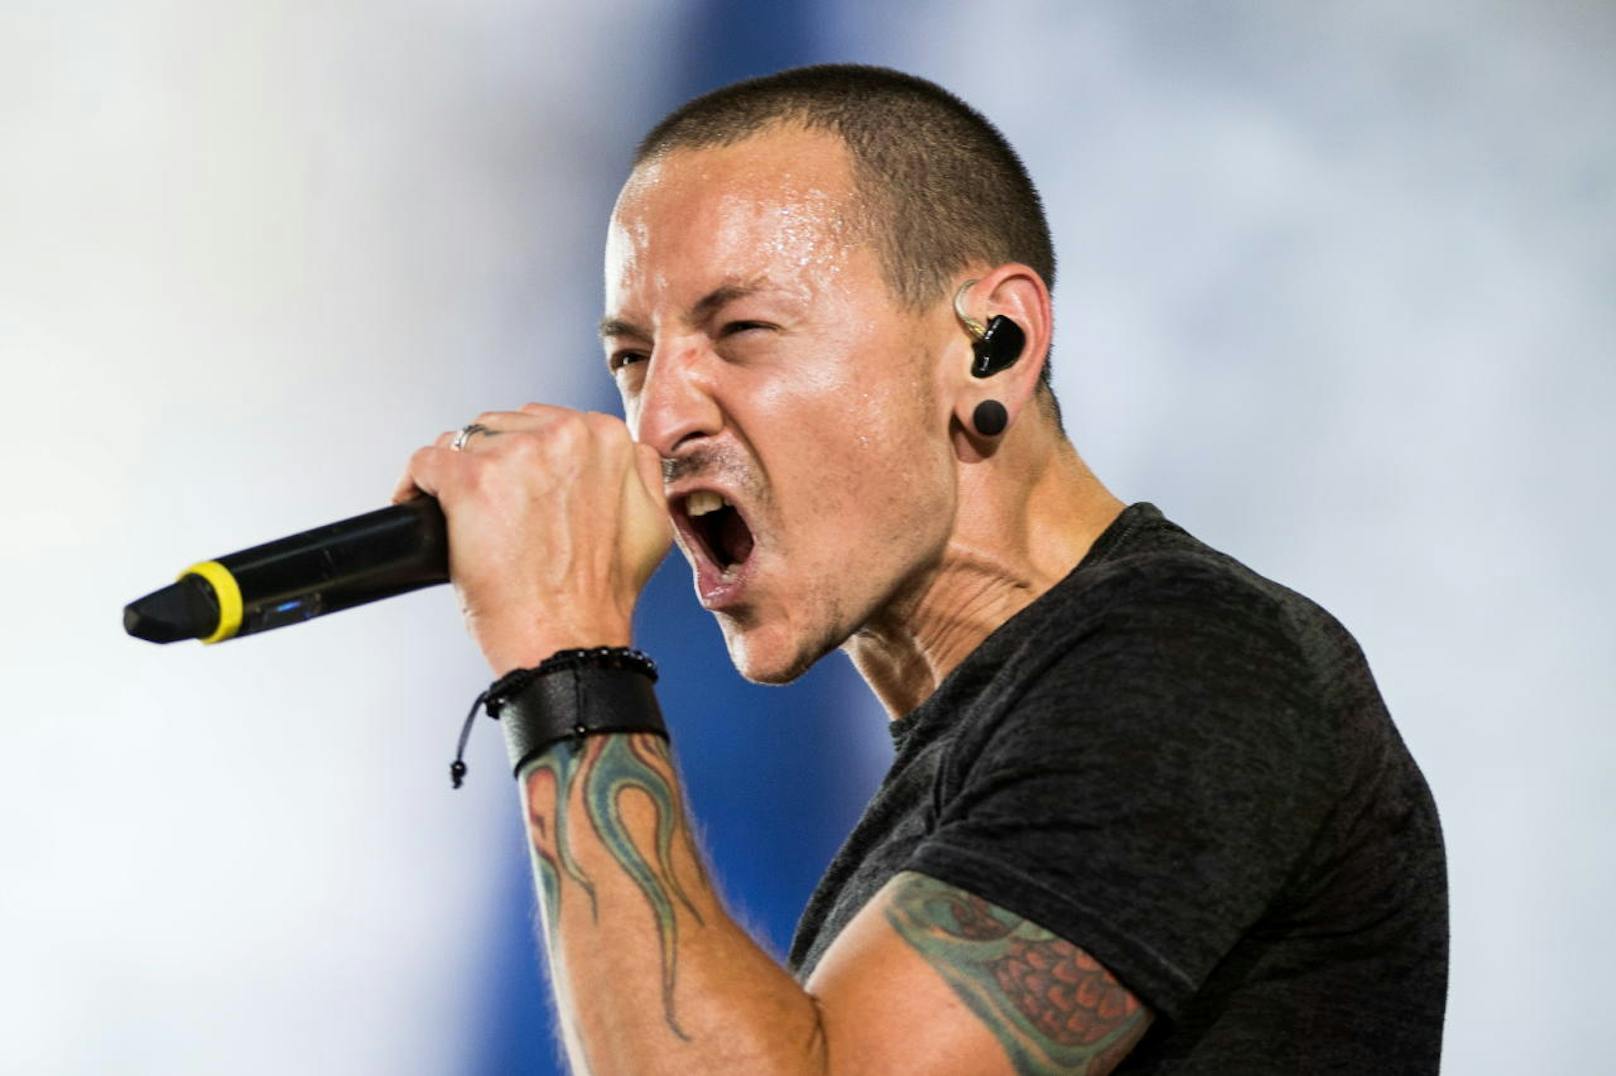 Linkin Park treten am 14. Juni 16 als Headline-Act beim Nova Rock-Festival auf: Jetzt mitmachen & 5 x 2 Karten für das legendäre Event gewinnen!